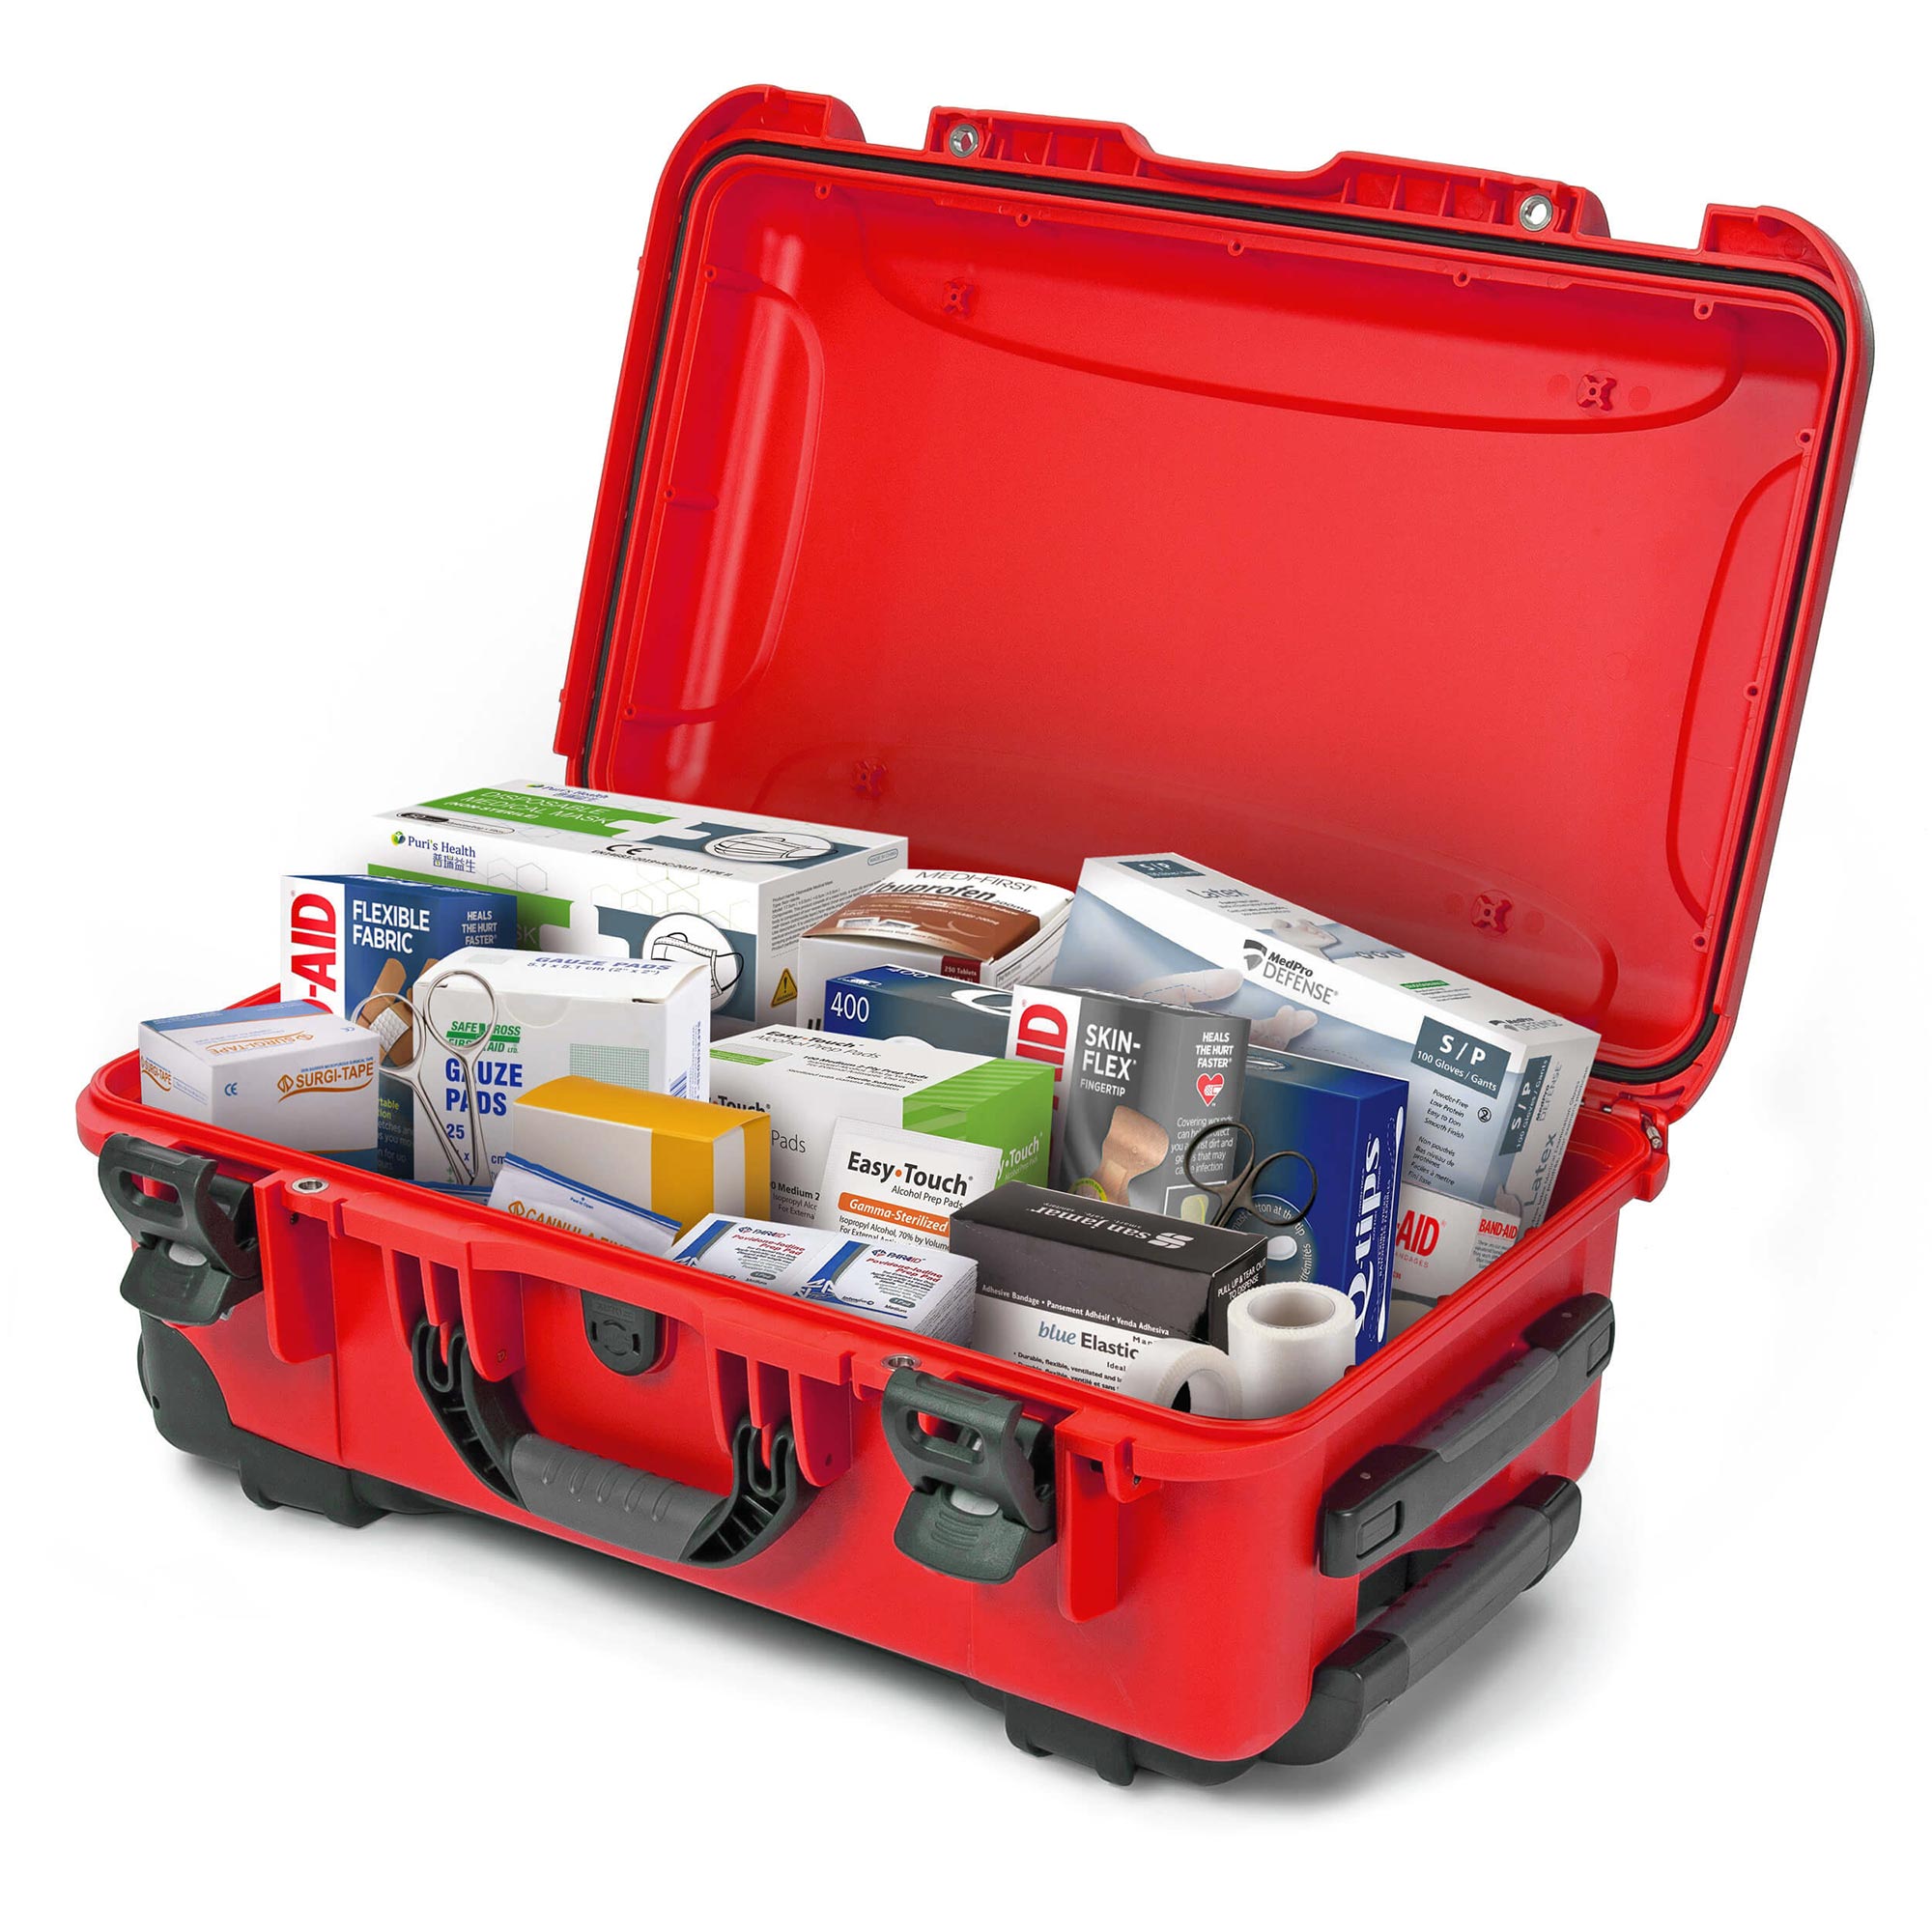 Band-aid Organization/First Aid Storage